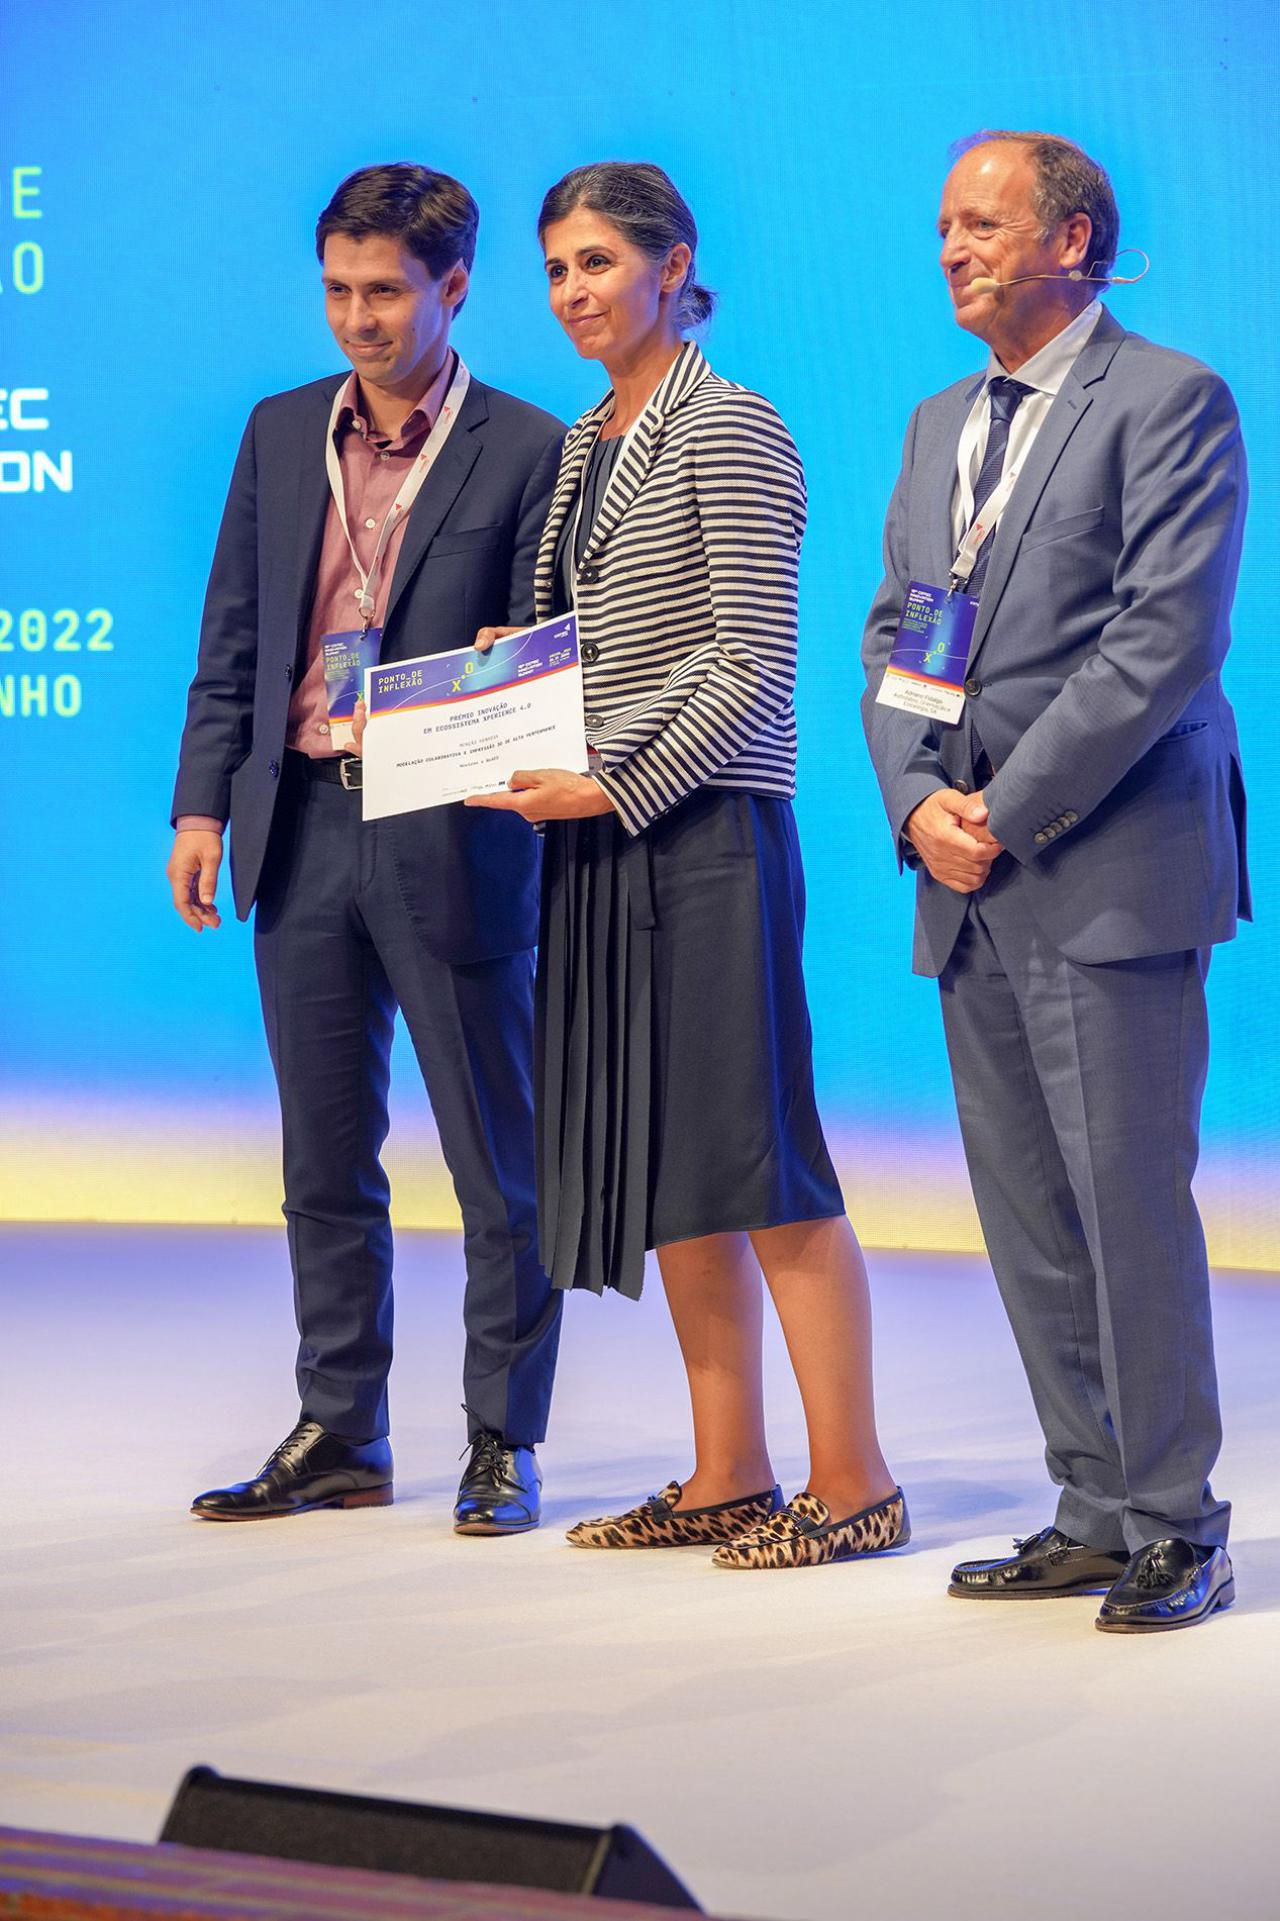 joao ventura recebe menção honrosa da COTEC Innovation Award | Hovione